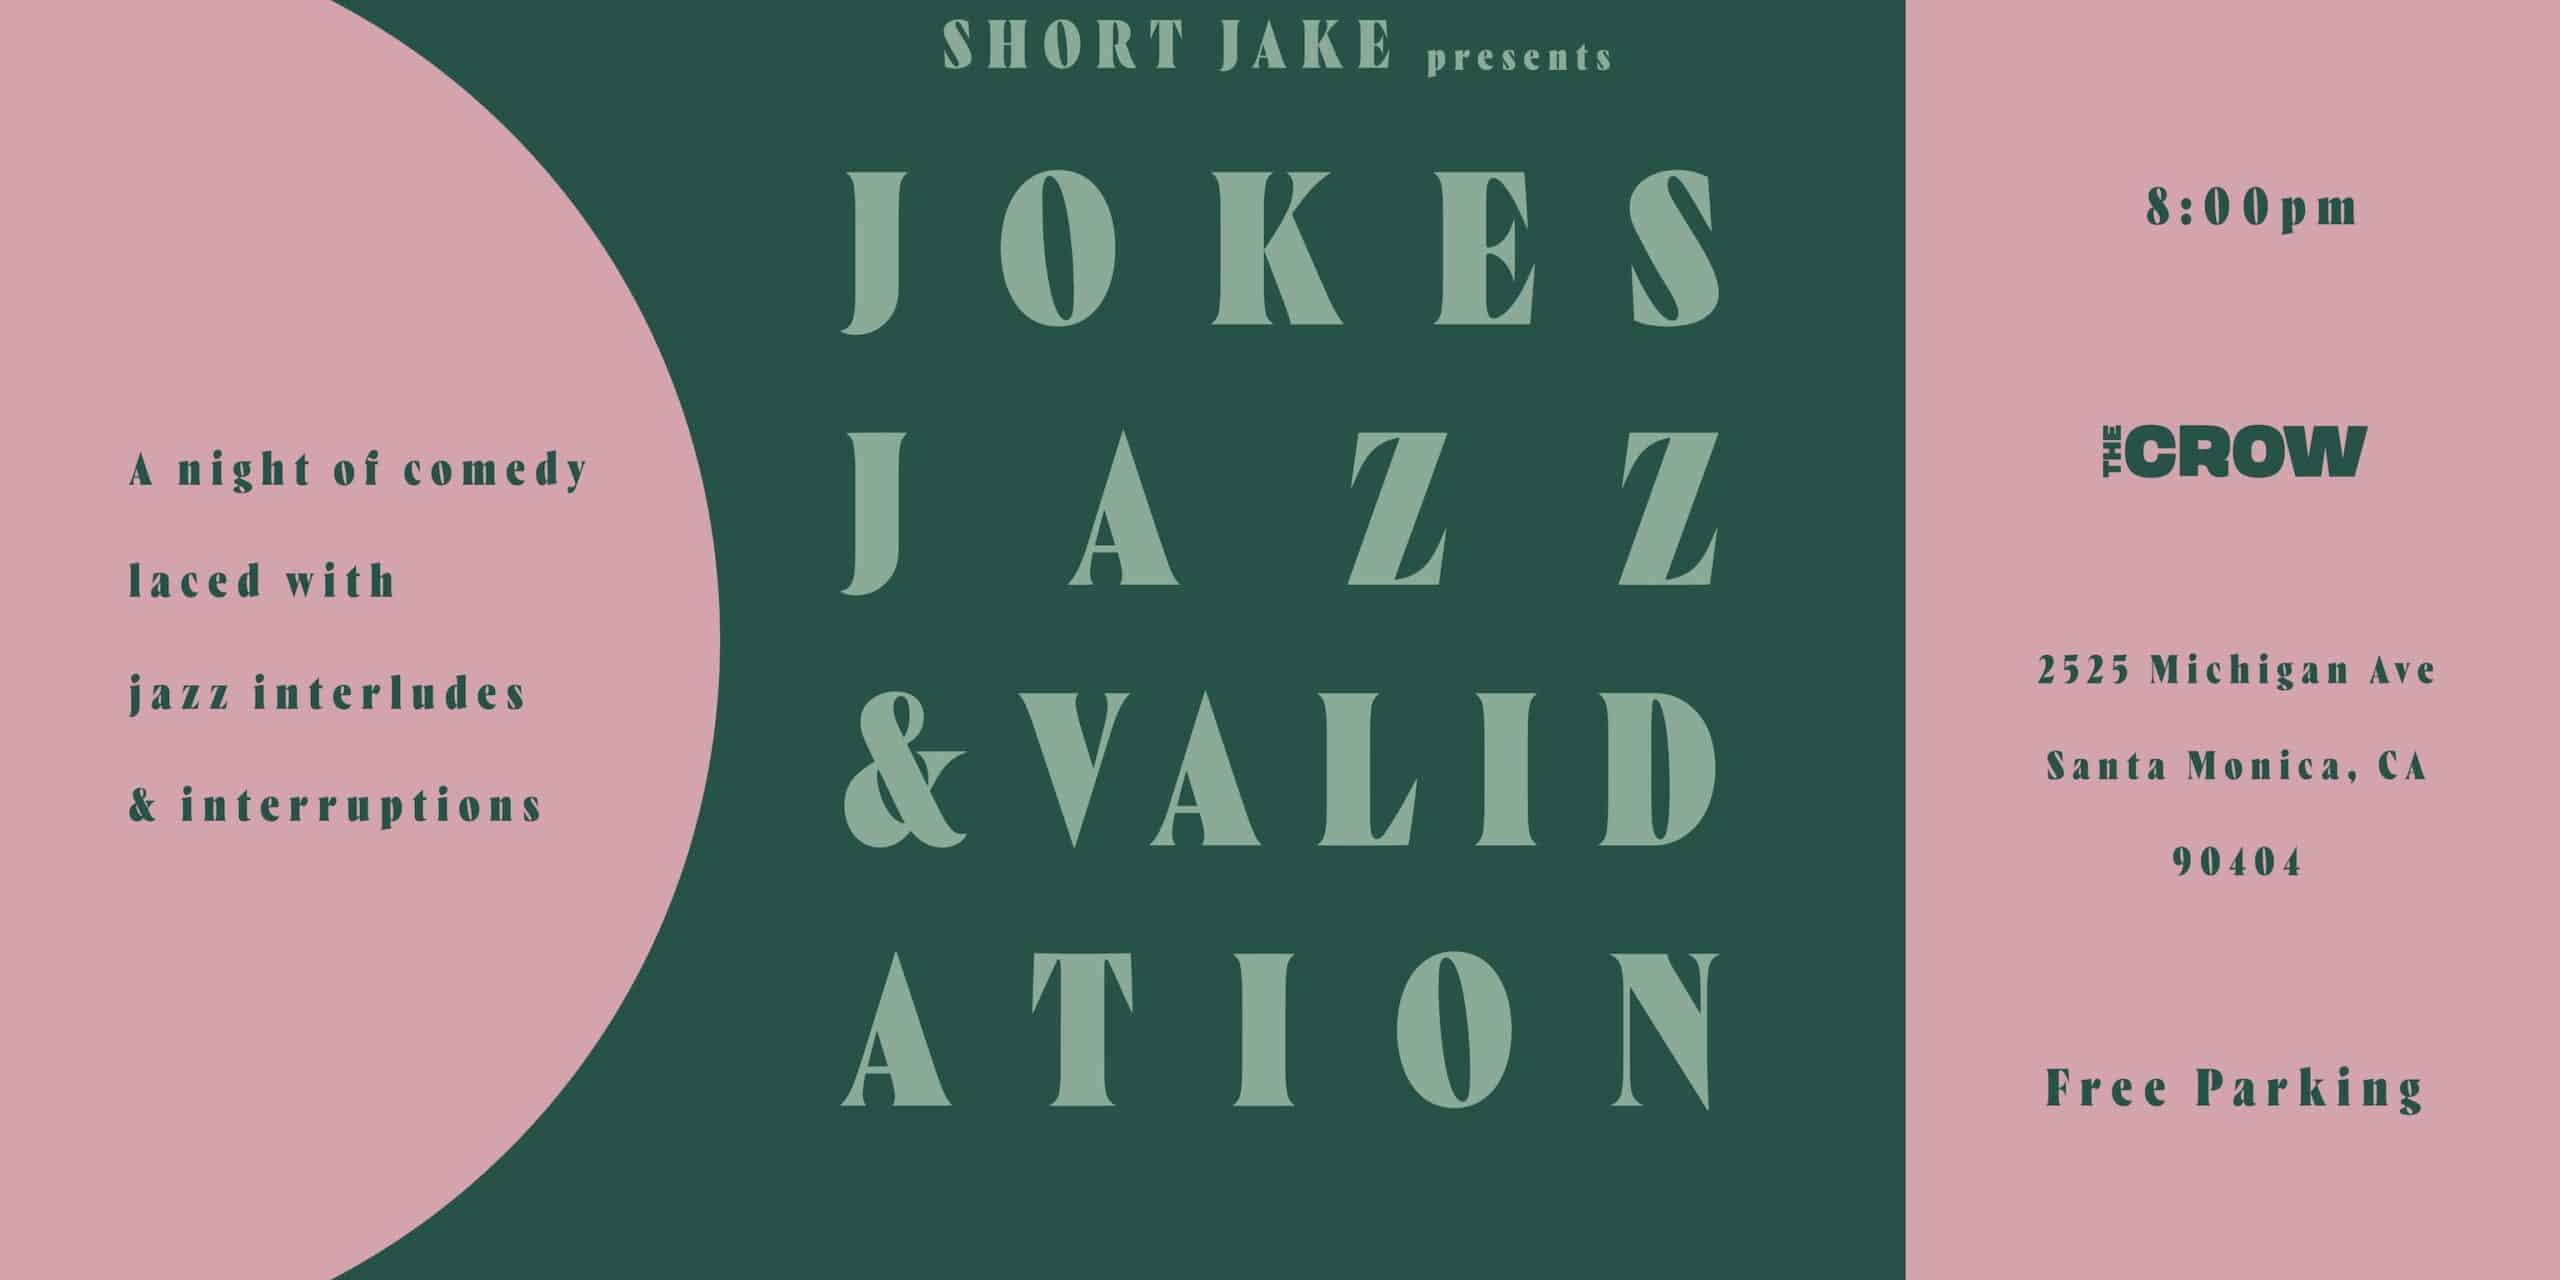 Jokes, Jazz, & Validation